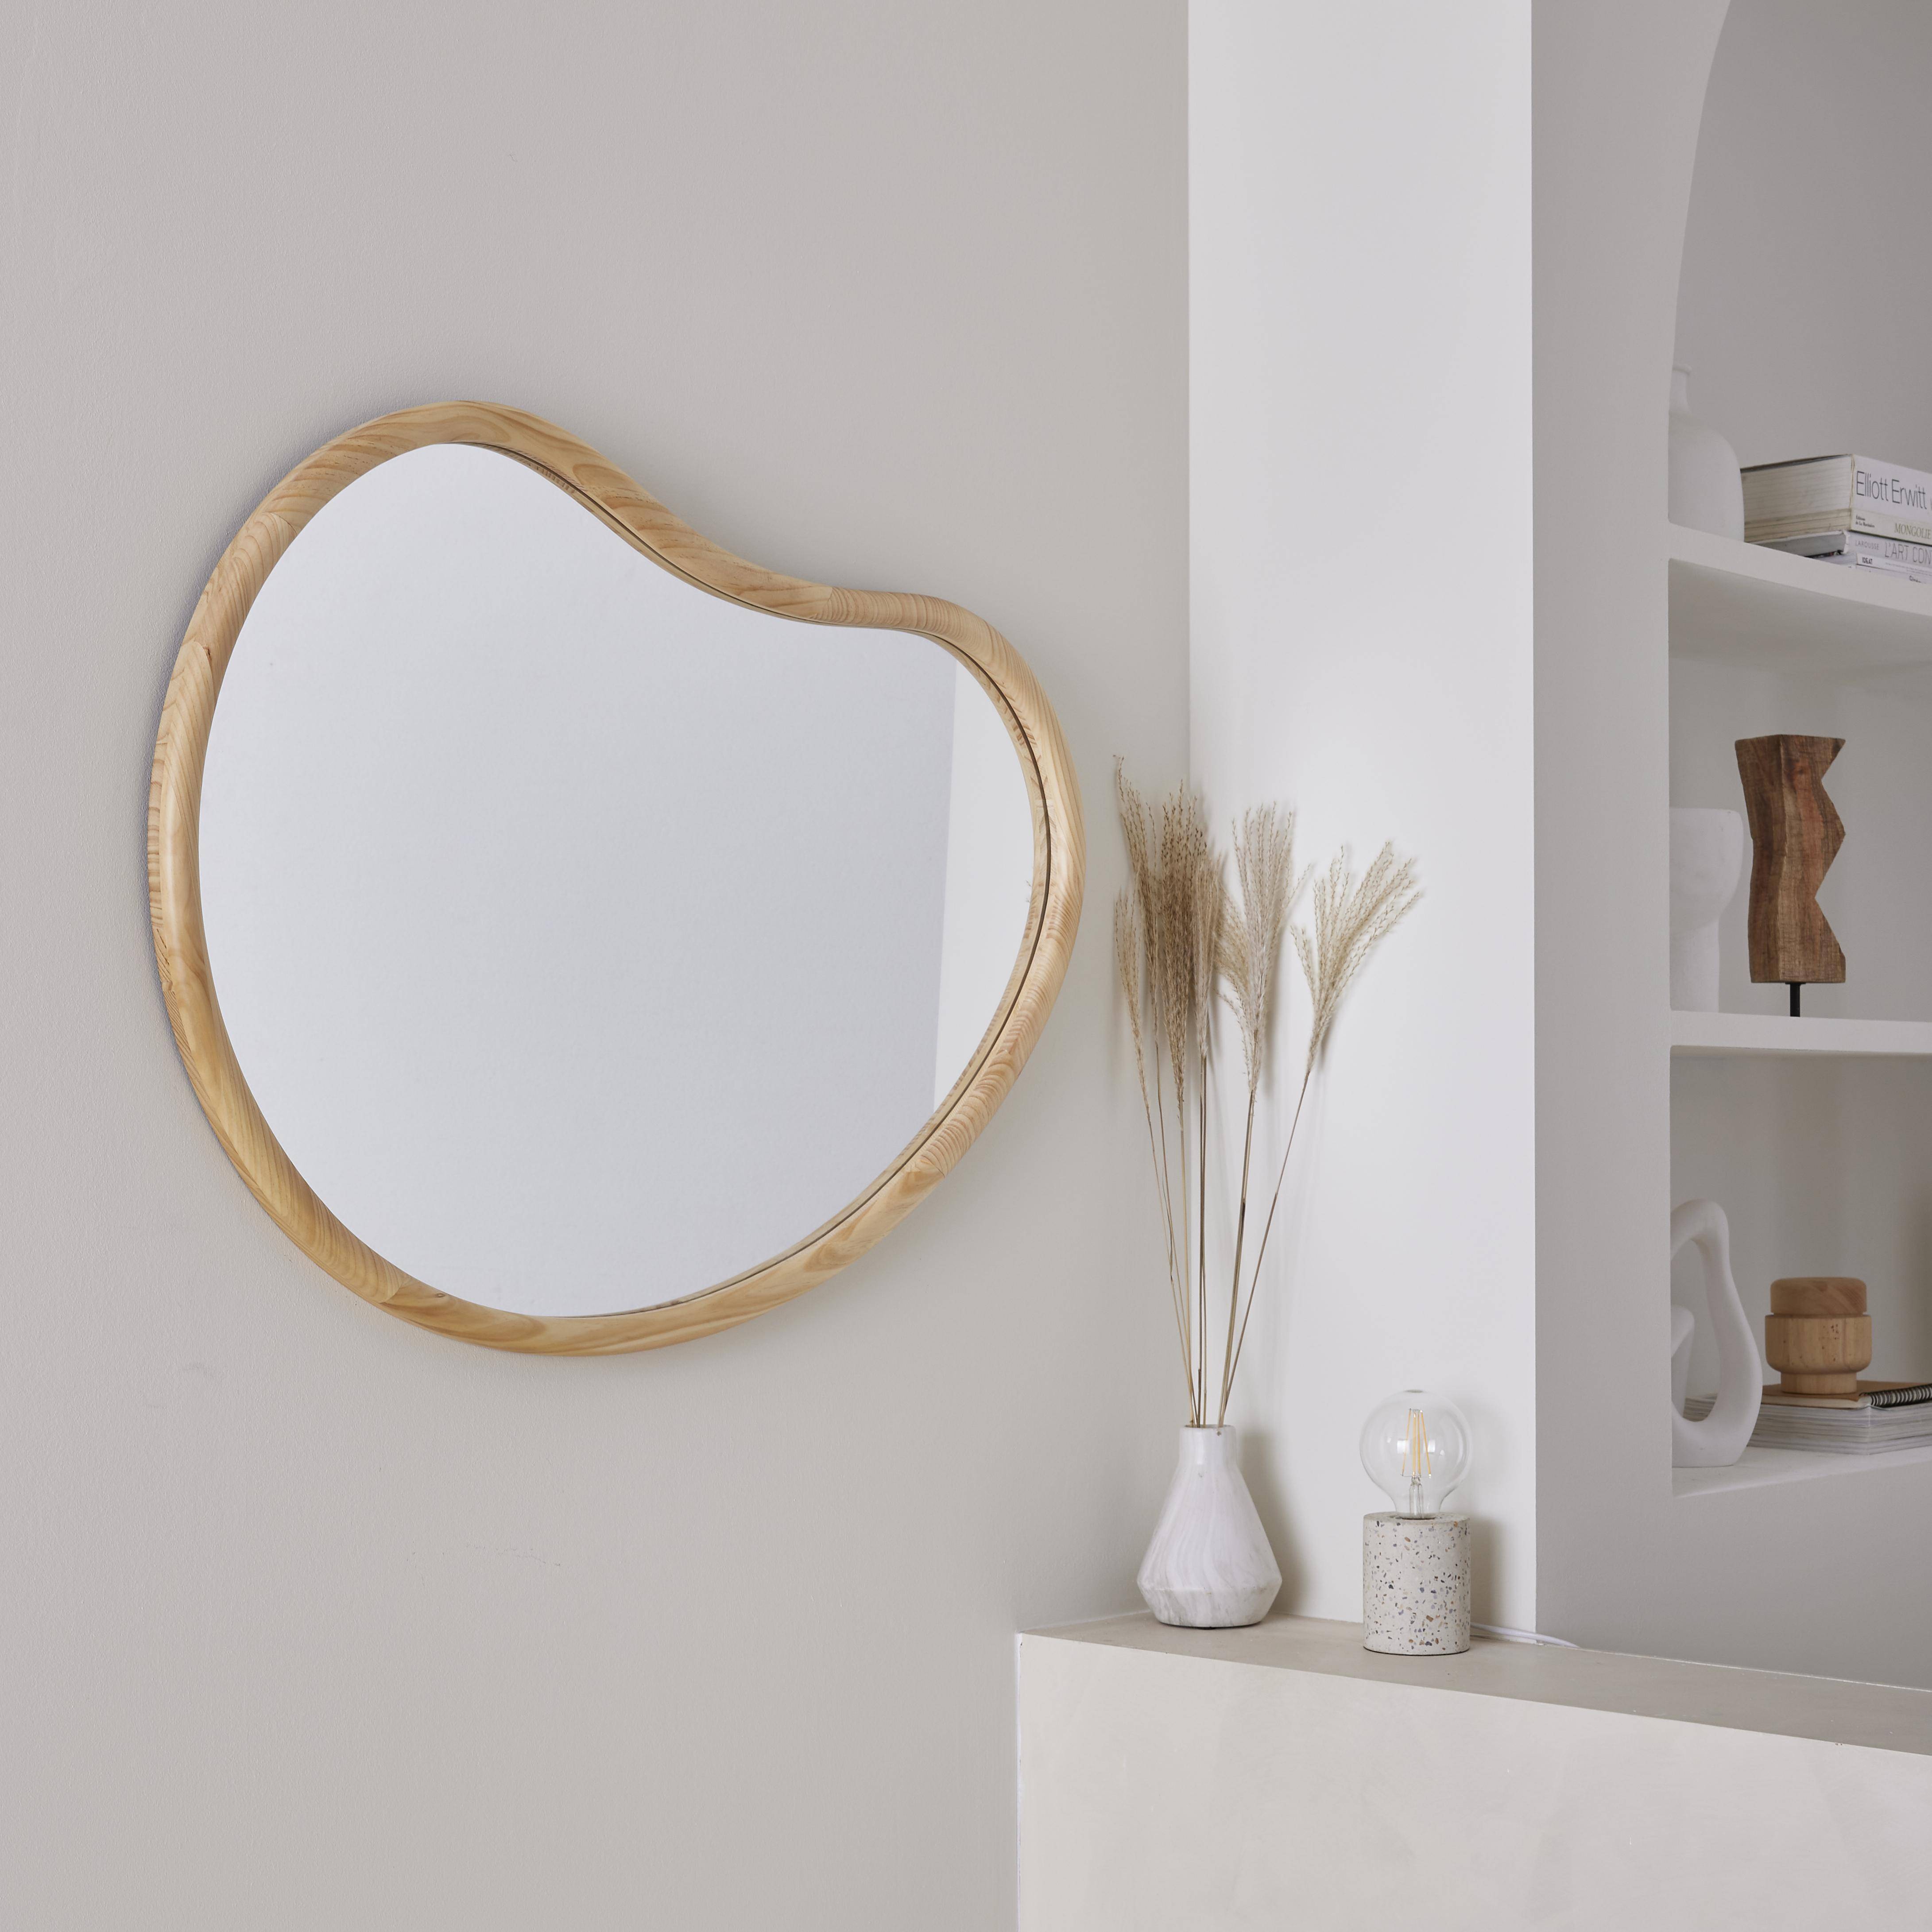 Organischer Spiegel aus Tannenholz 95cm, 3cm dick, naturfarben, für Eingang, Schlafzimmer oder Badezimmer - Jacob,sweeek,Photo2